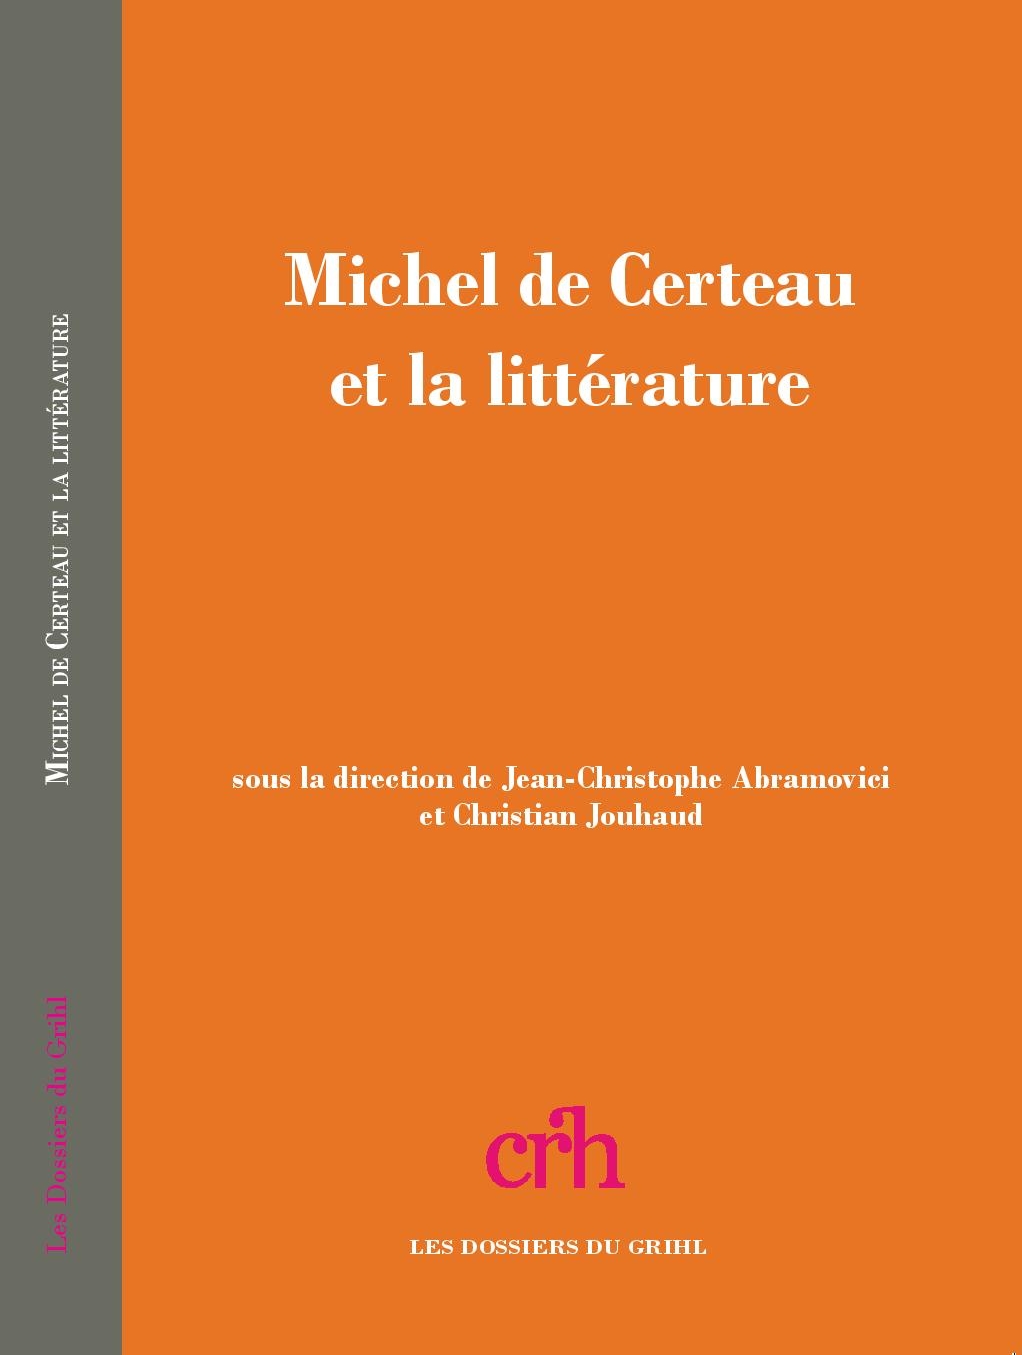 Michel de Certeau et la littérature